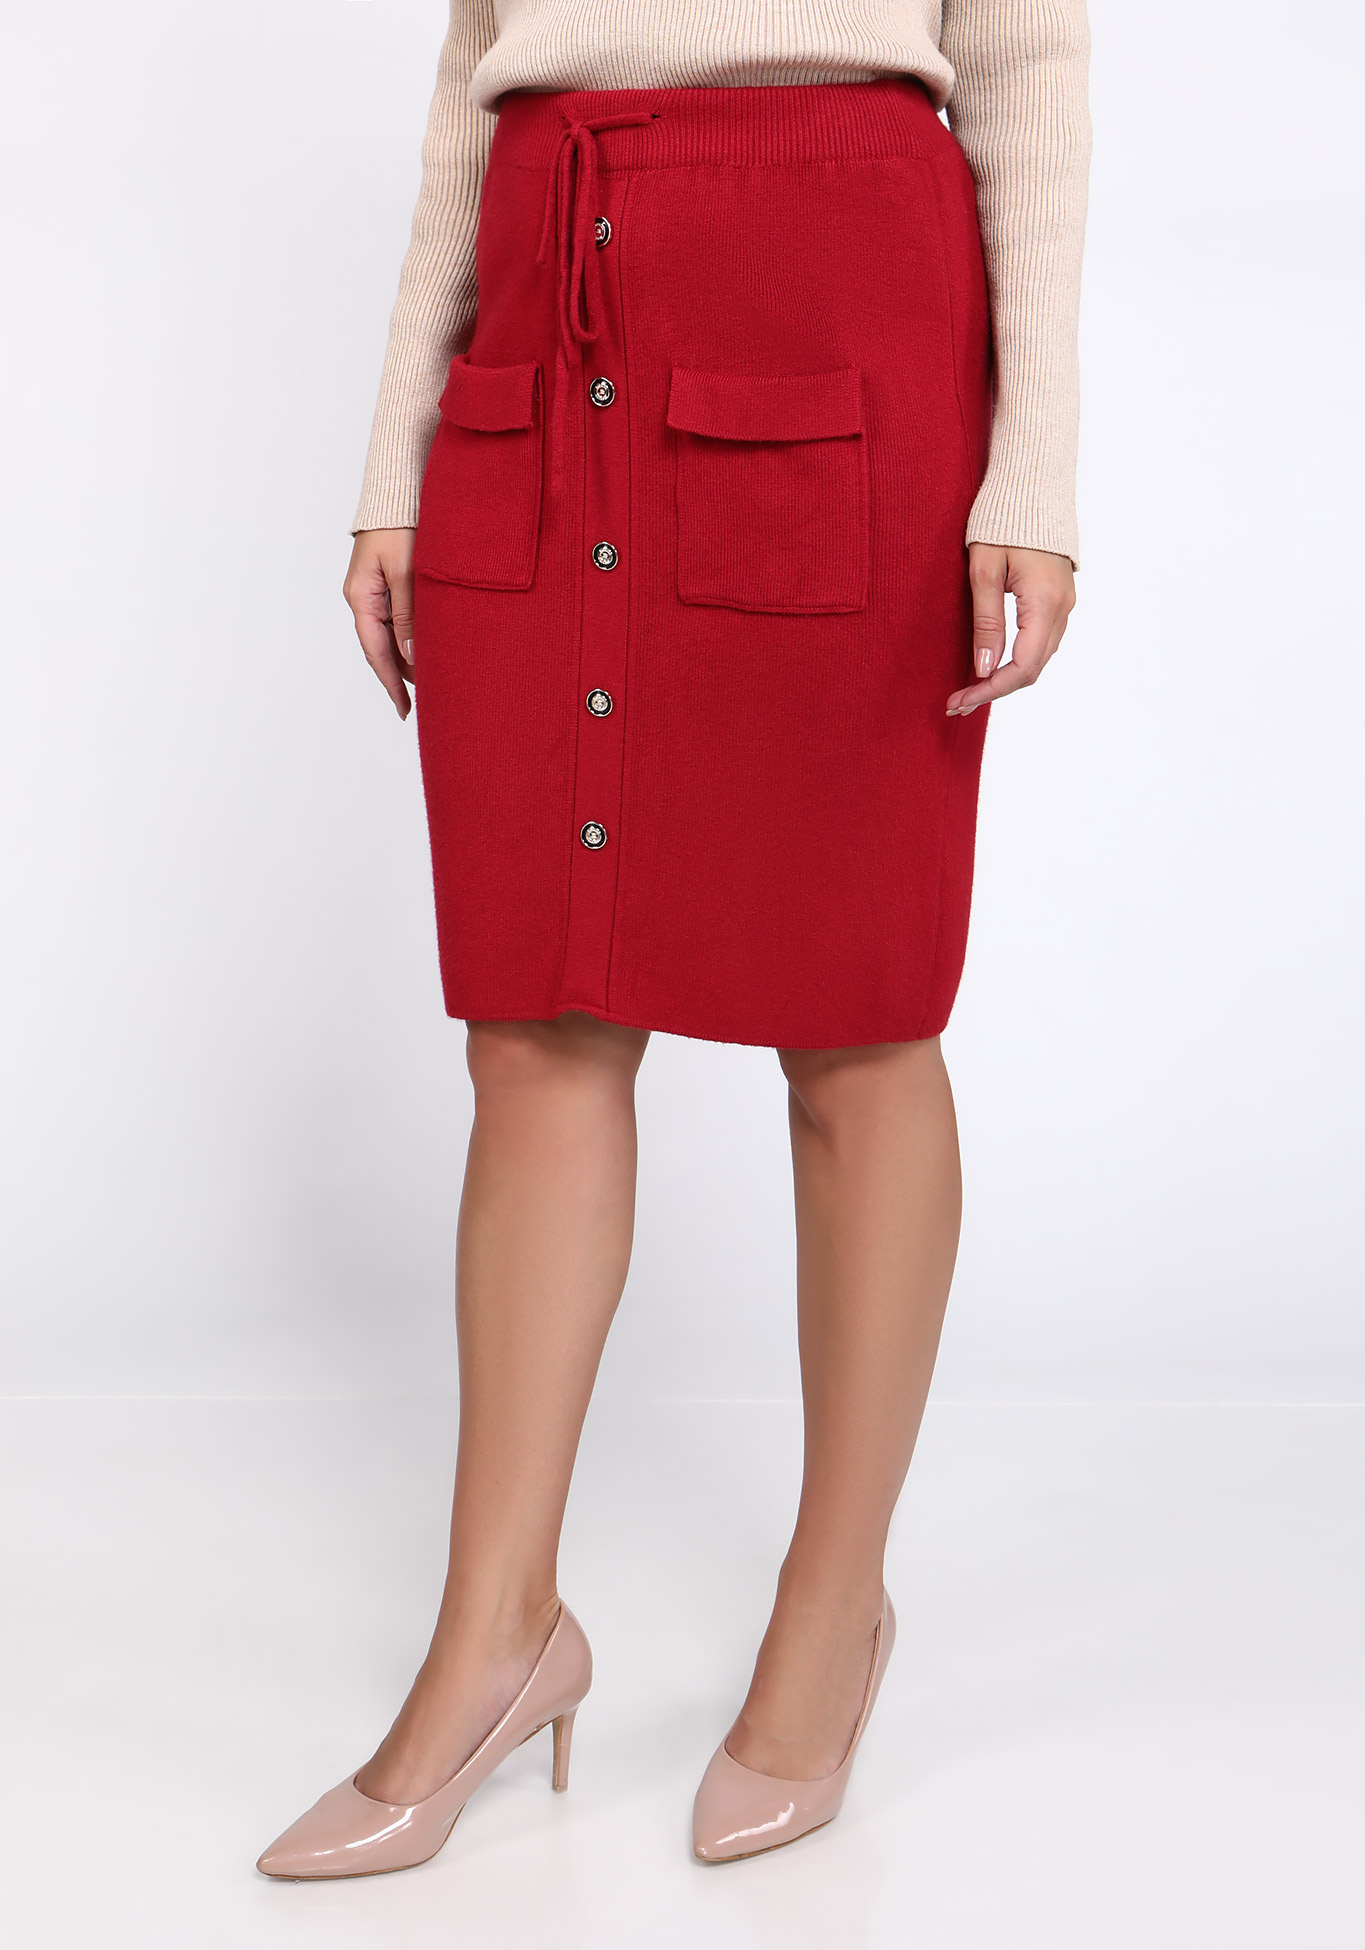 Женская юбка с карманами "Яркий образ", размер 52, цвет красный - фото 2